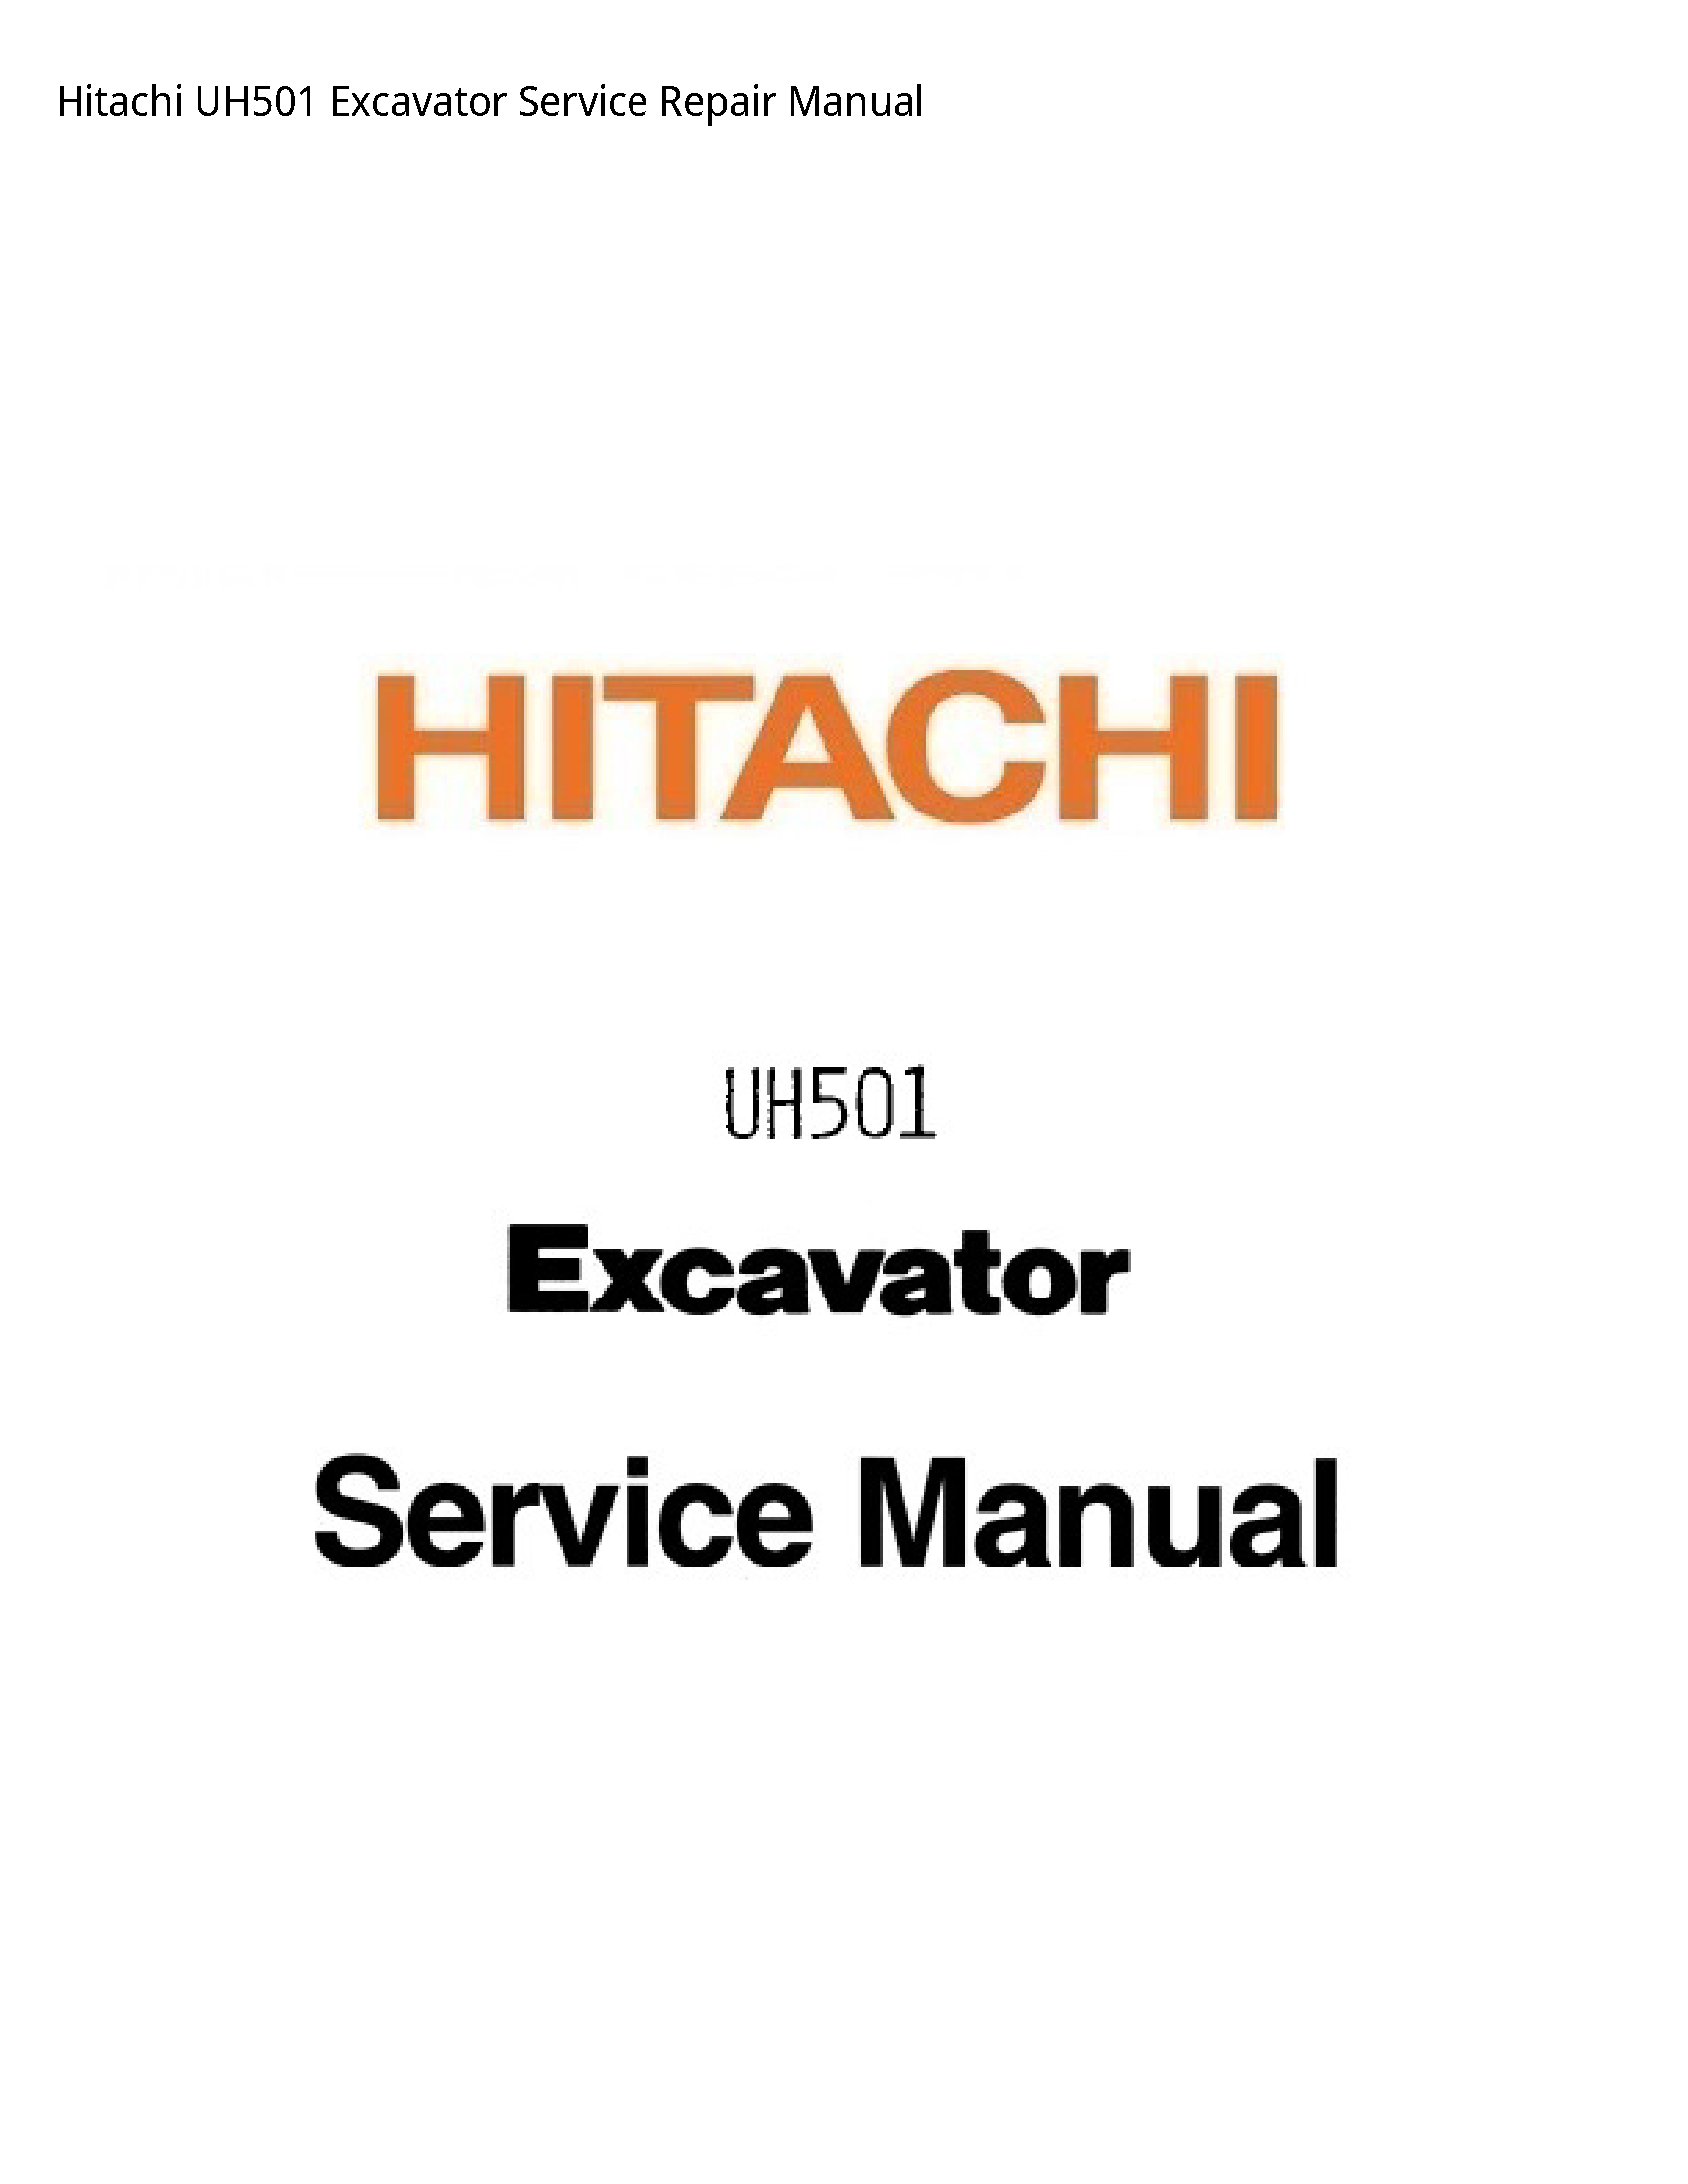 Hitachi UH501 Excavator manual